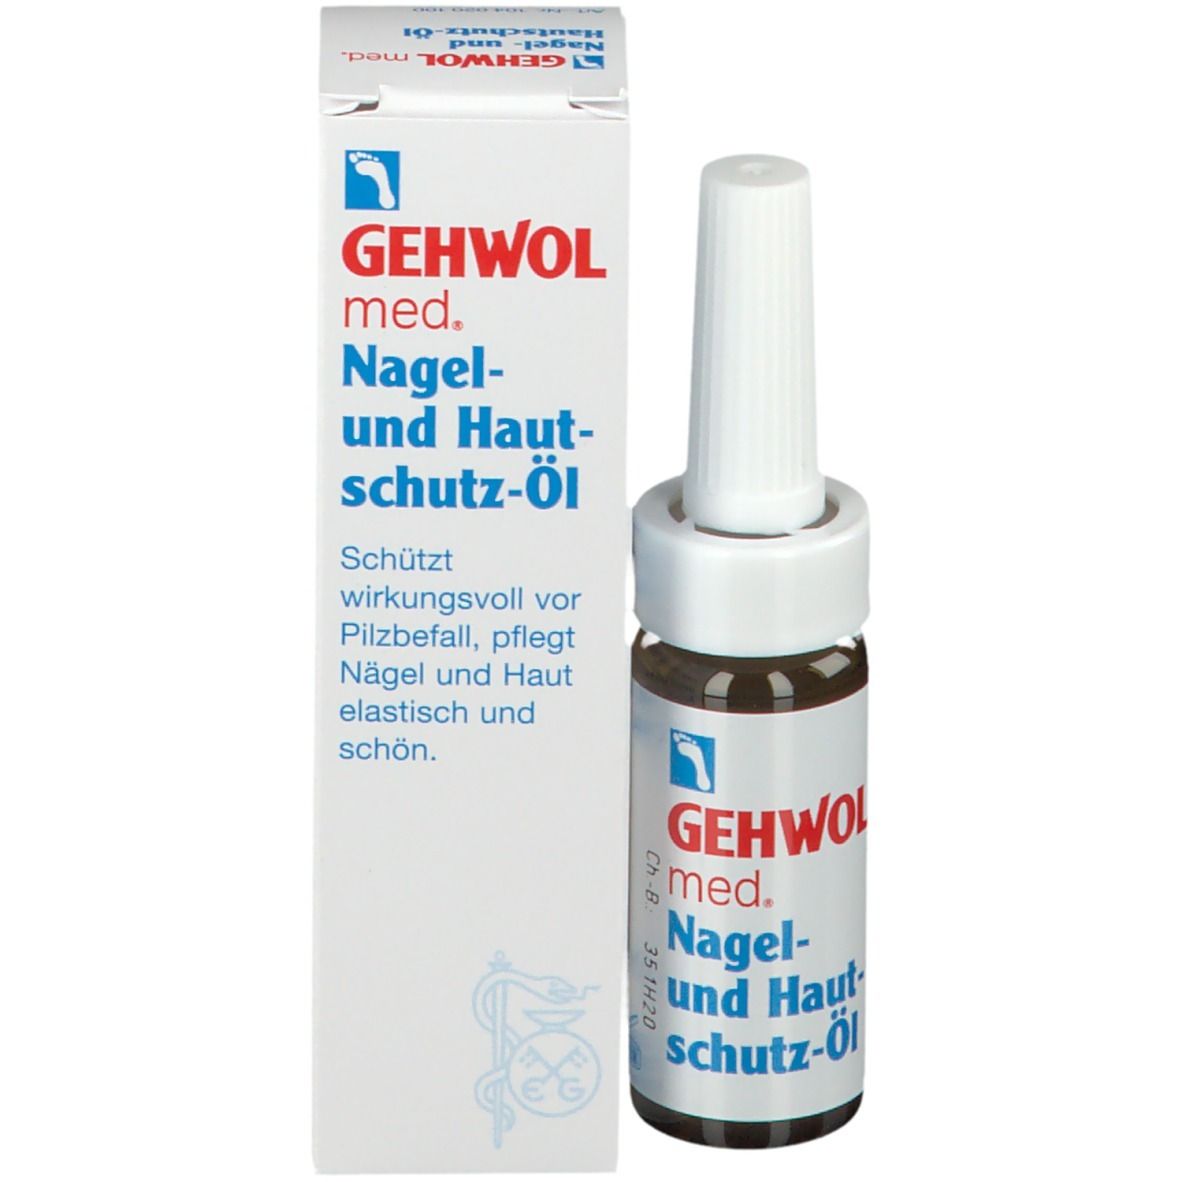 GEHWOL med® Nagel- und Hautschutz-Öl